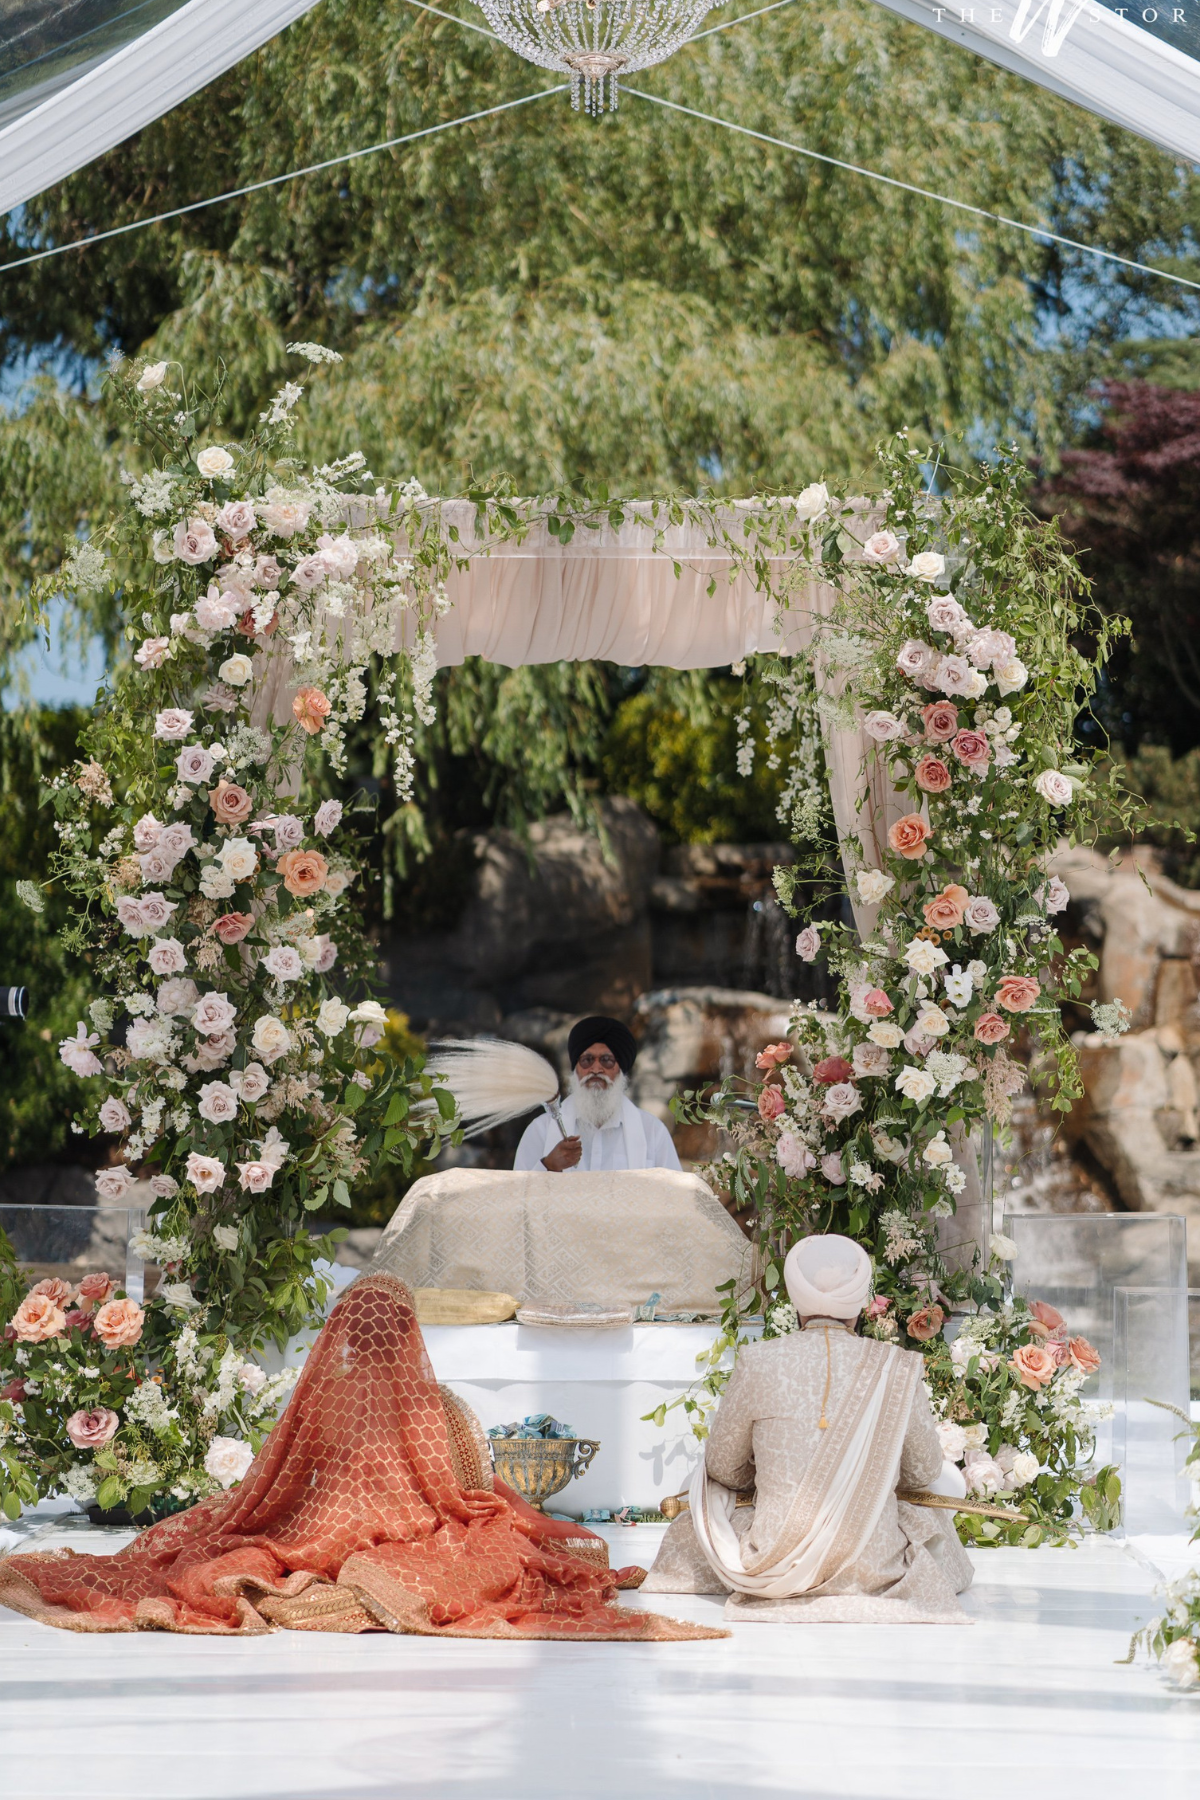 sikh-wedding-outdoor-peach-roses-greenery-palki-mandap-bride-groom